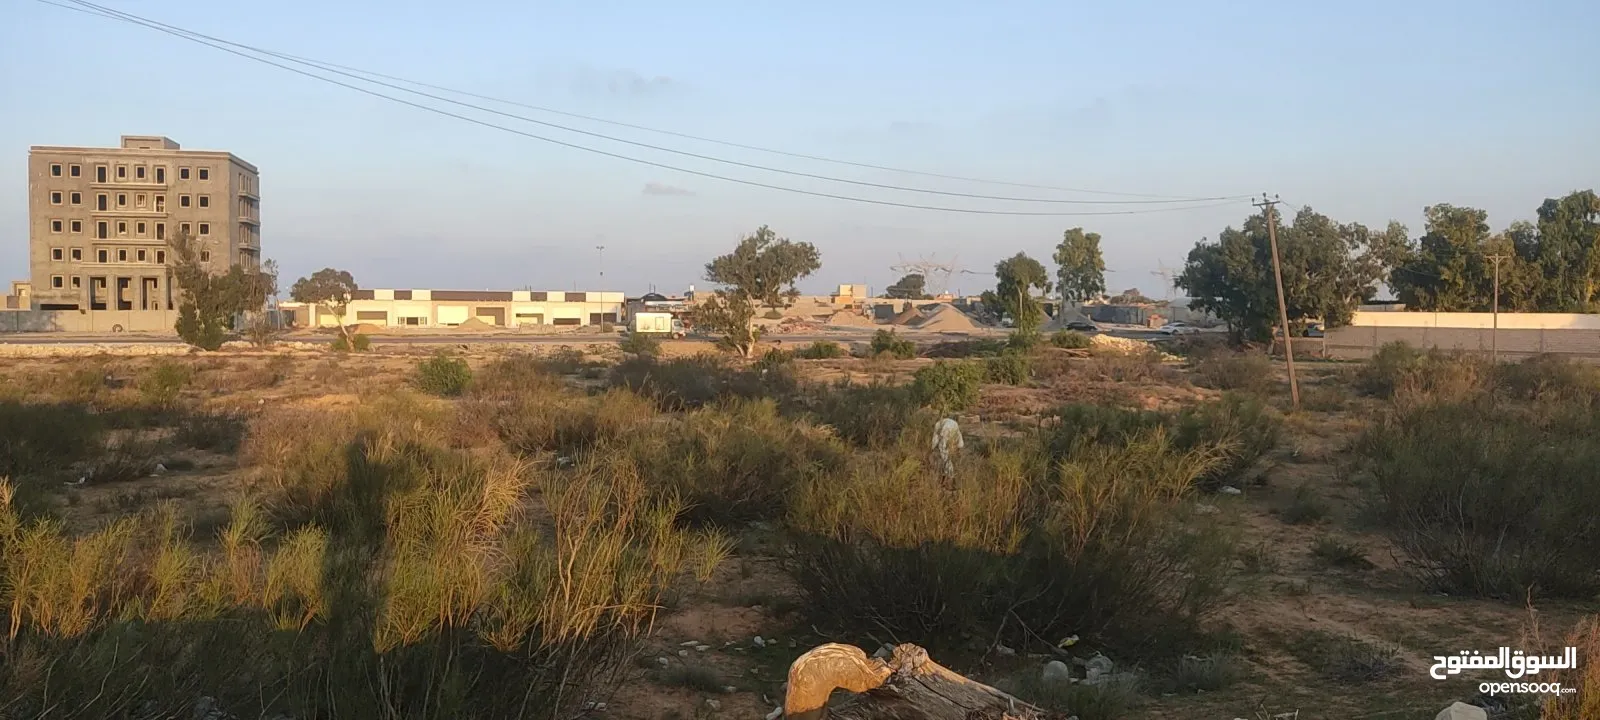 قطعة أرض للبيع مقابل مسجد الرحمة